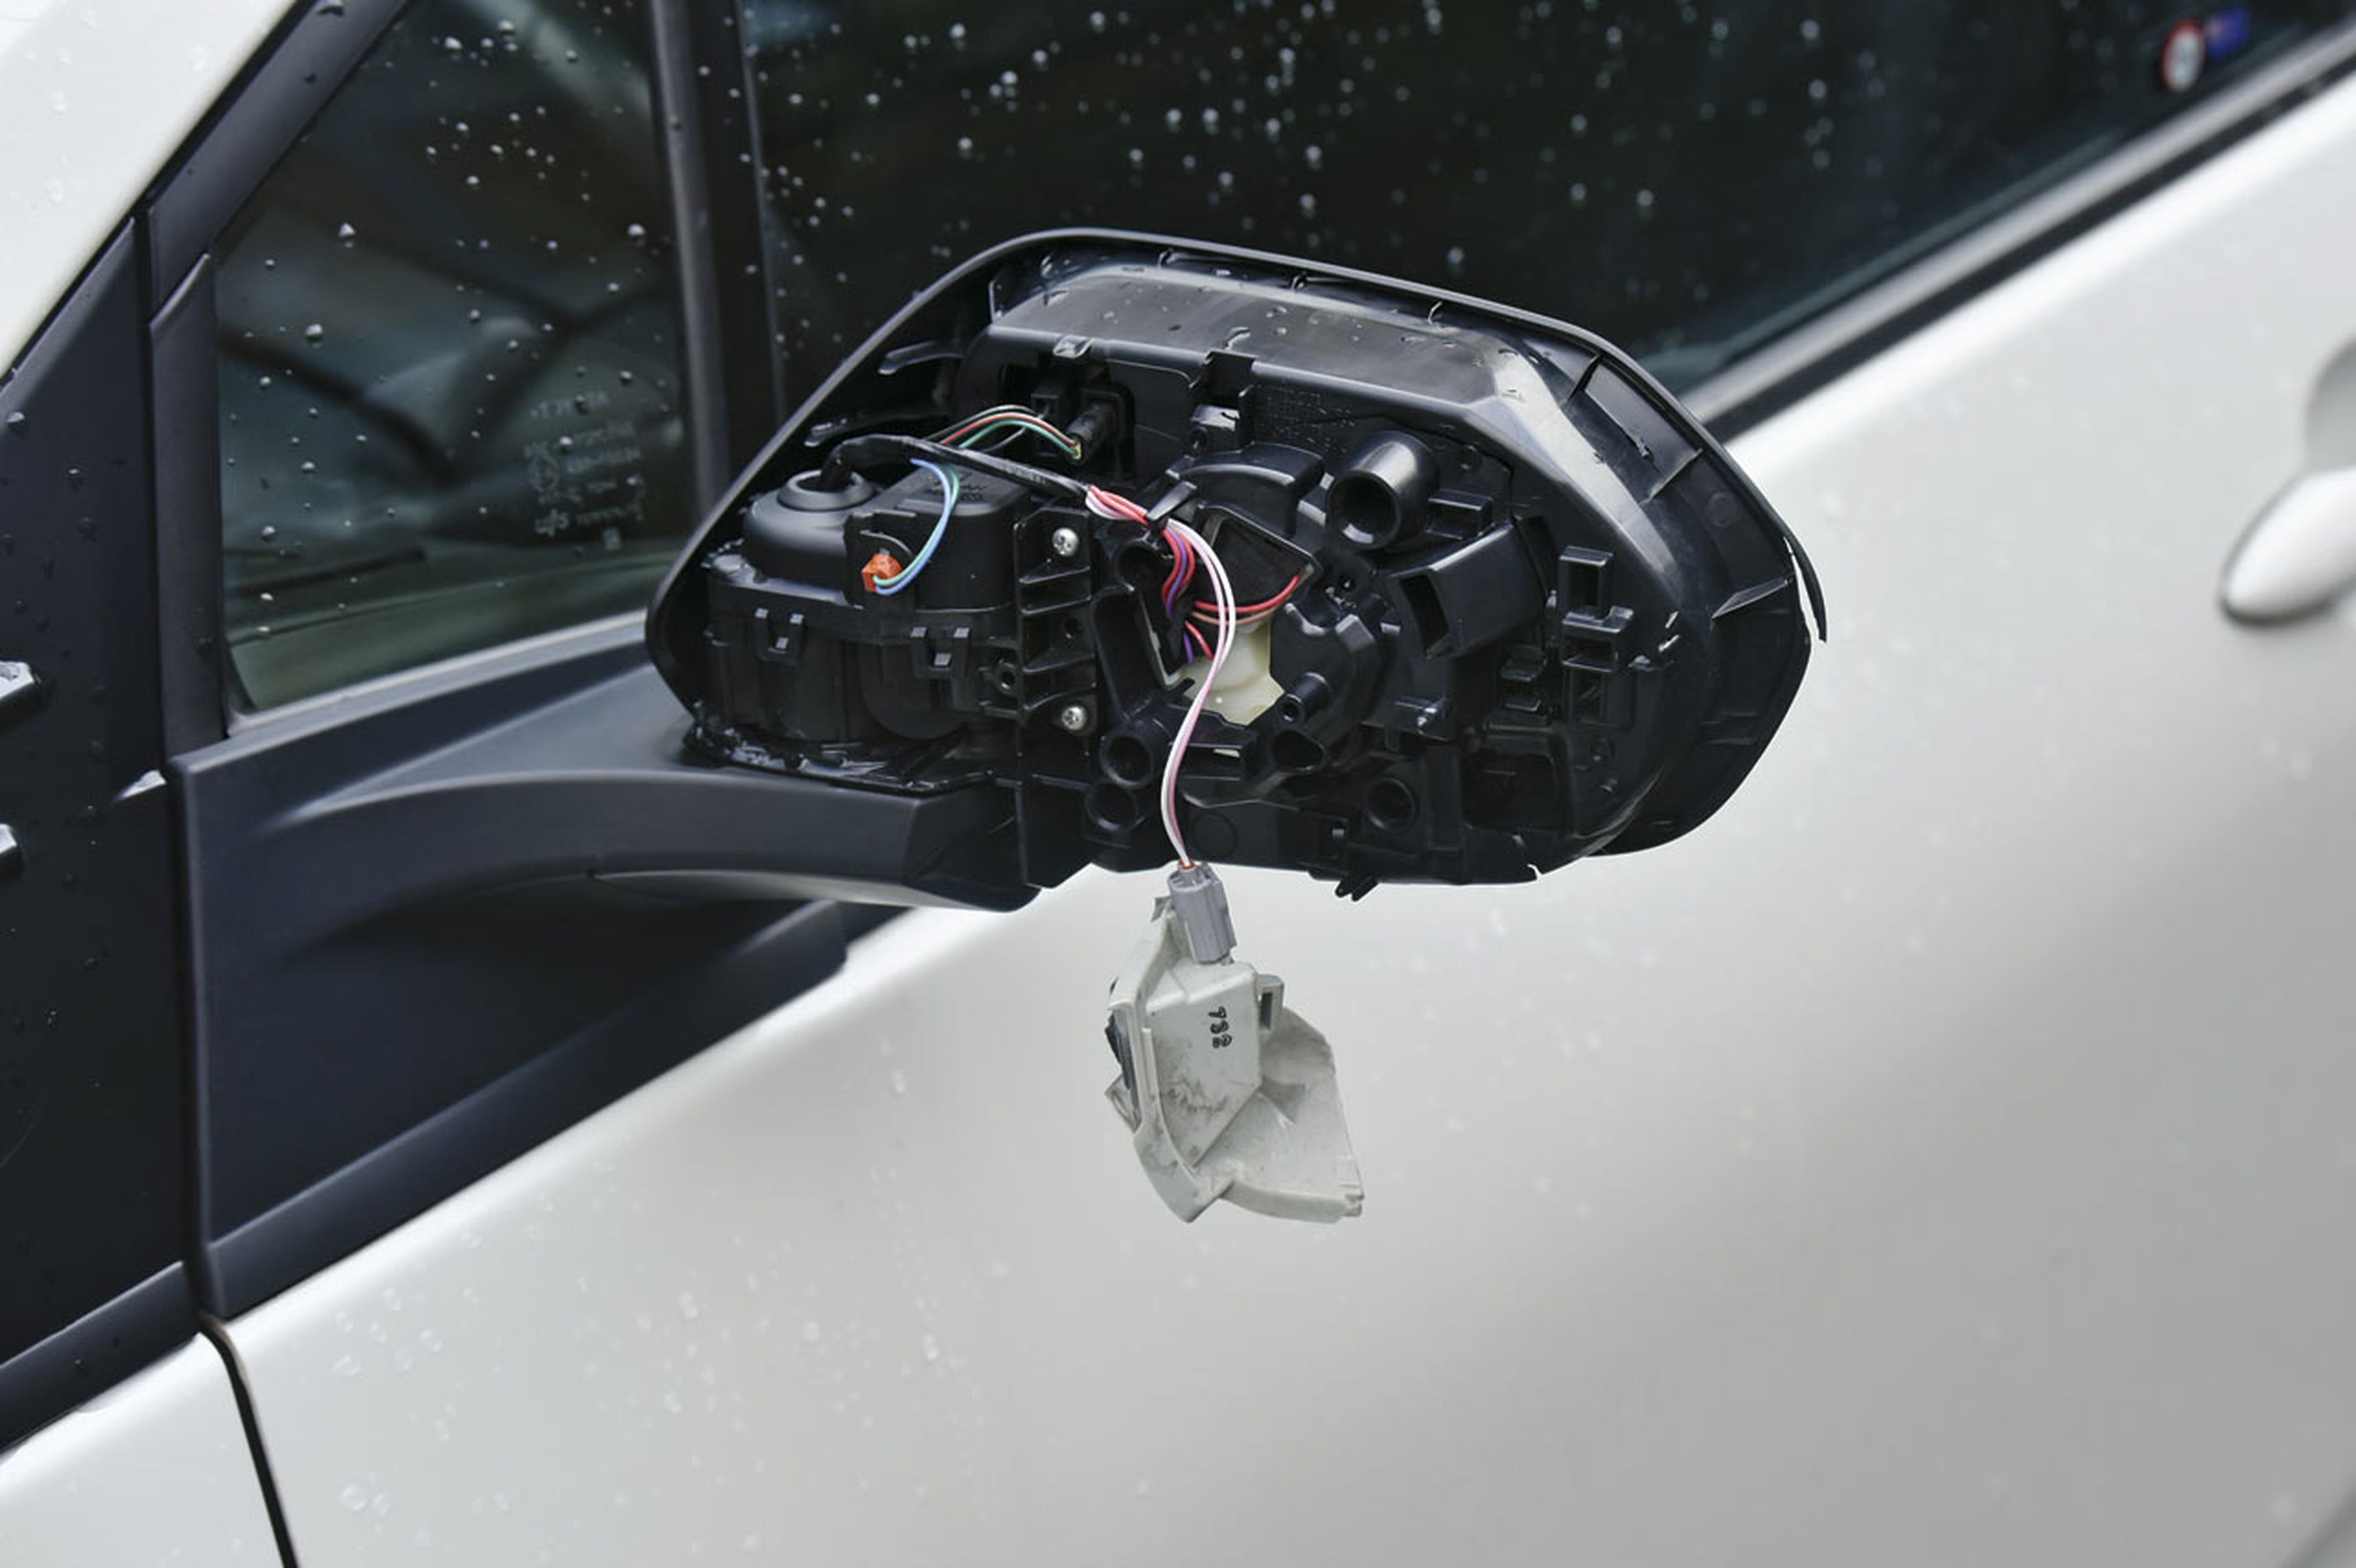 Triste sorpresa: un extraño se llevó por delante el espejo retrovisor izquierdo del Prius estacionado y se dio a la fuga. Será c…